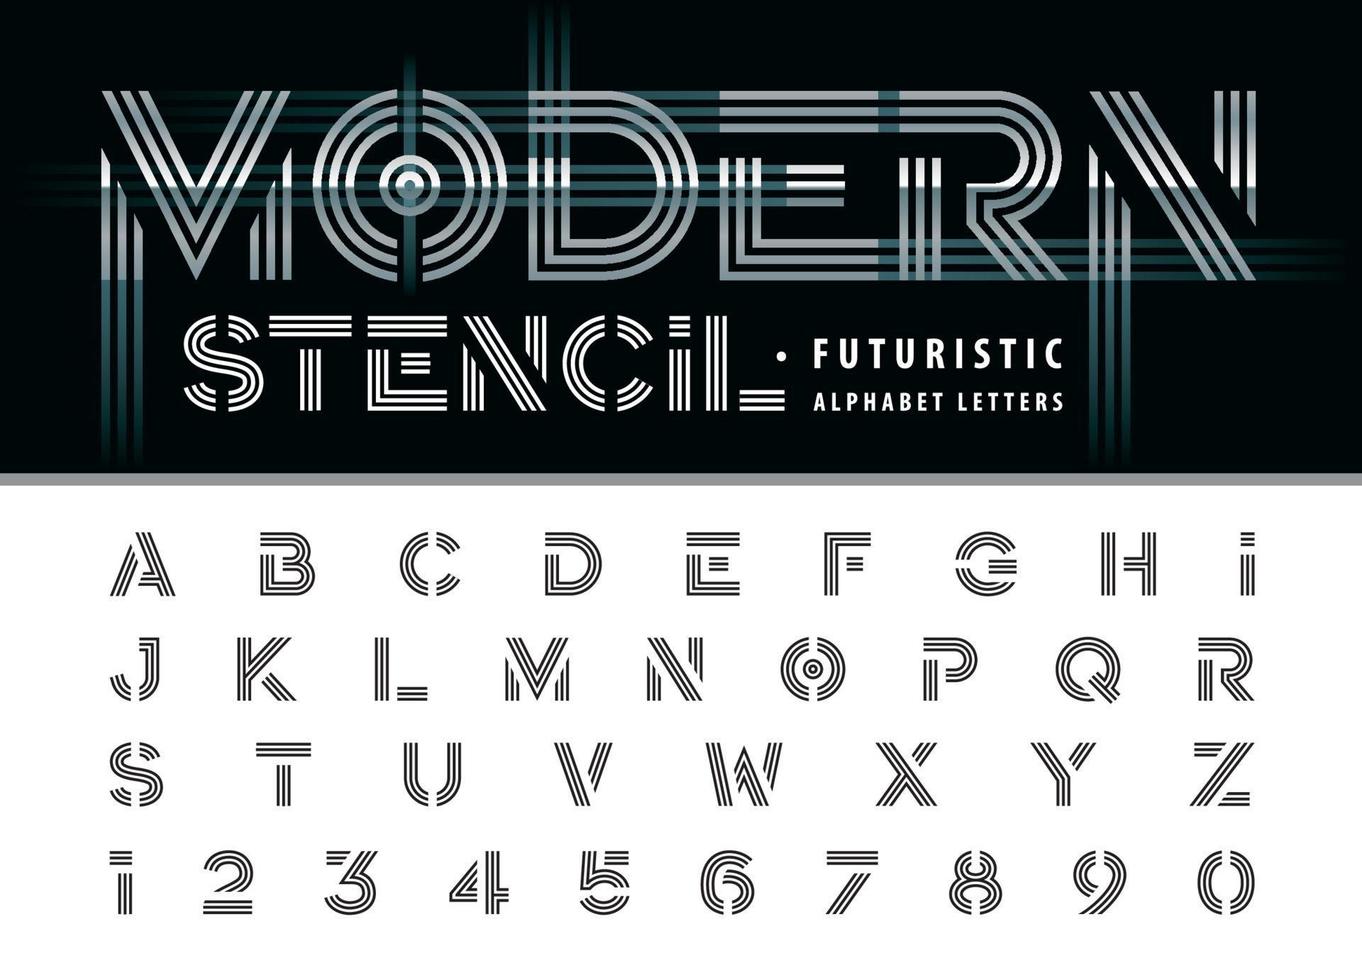 lettere e numeri dell'alfabeto moderno a tre righe, set di caratteri in grassetto minimo per tecnologia, moda, futuristico. vettore